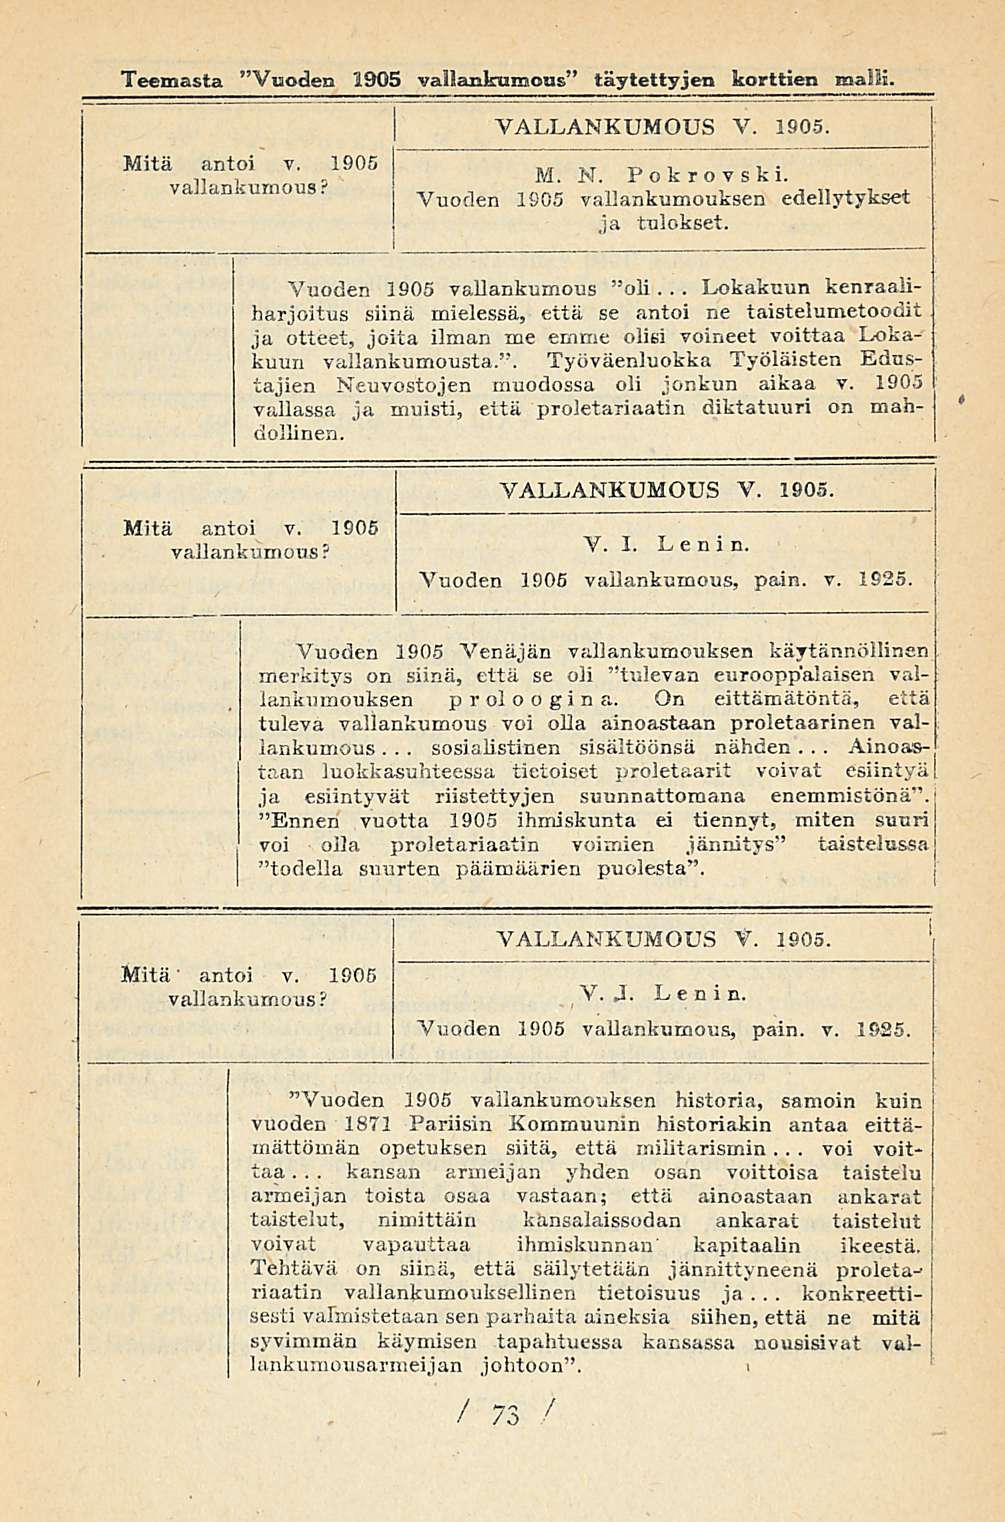 .. Lokakuun.. Teemasta "Vuoden 1905 vallankumous täytettyjen korttien malli. Mitä antoi y. 1905 vallankumous VALLANKUMOUS V. 1905. M. N. Pokrovski.